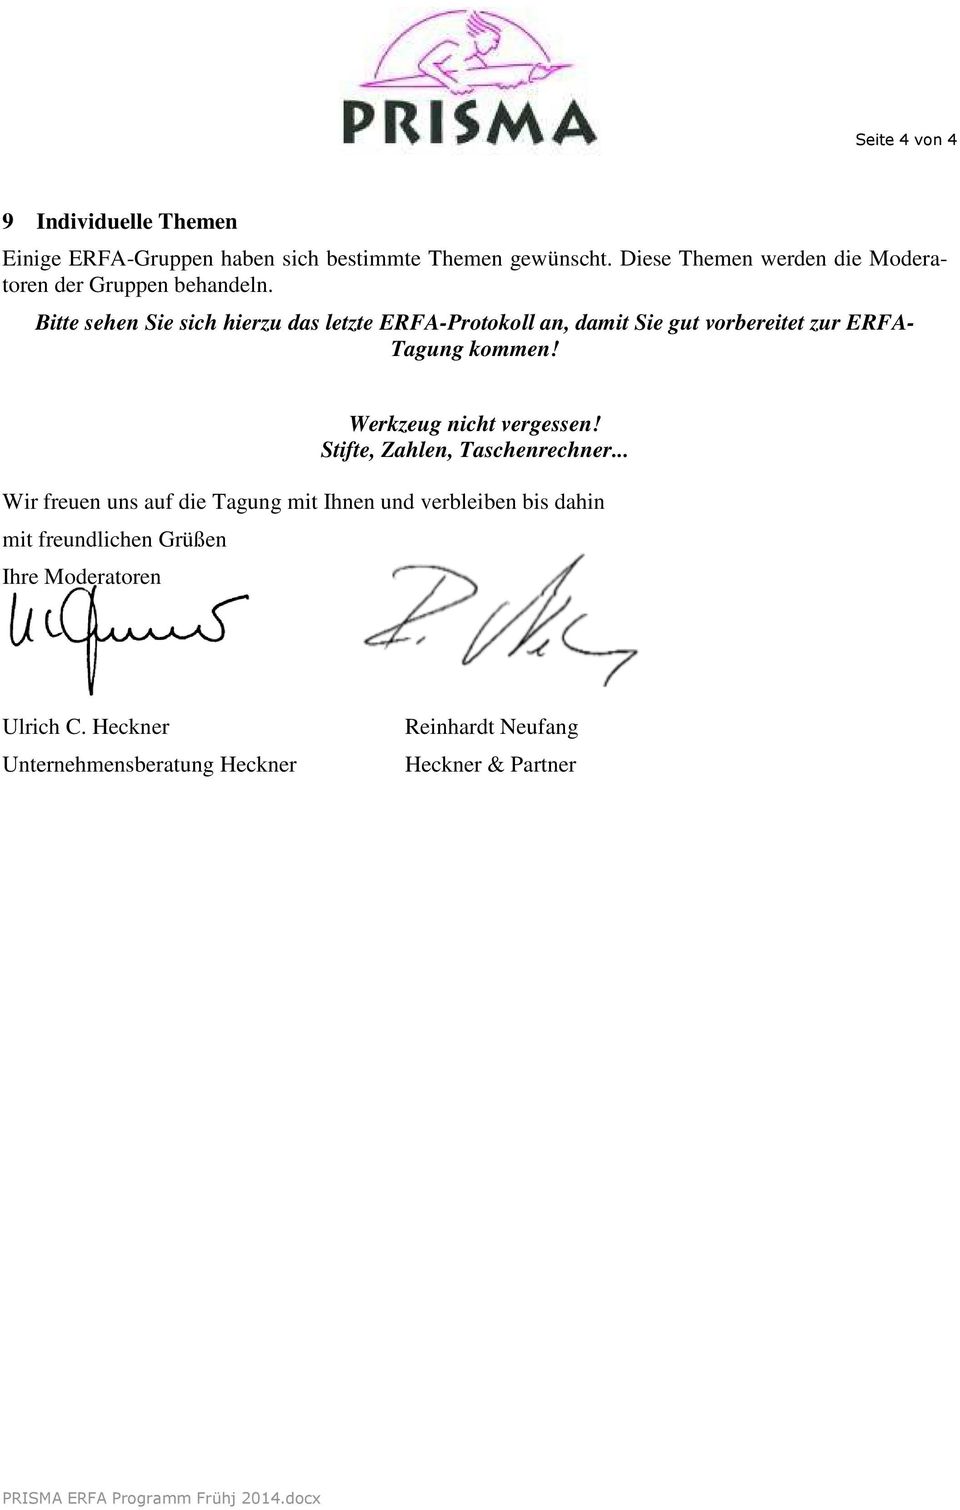 Bitte sehen Sie sich hierzu das letzte ERFA-Protokoll an, damit Sie gut vorbereitet zur ERFA- Tagung kommen!